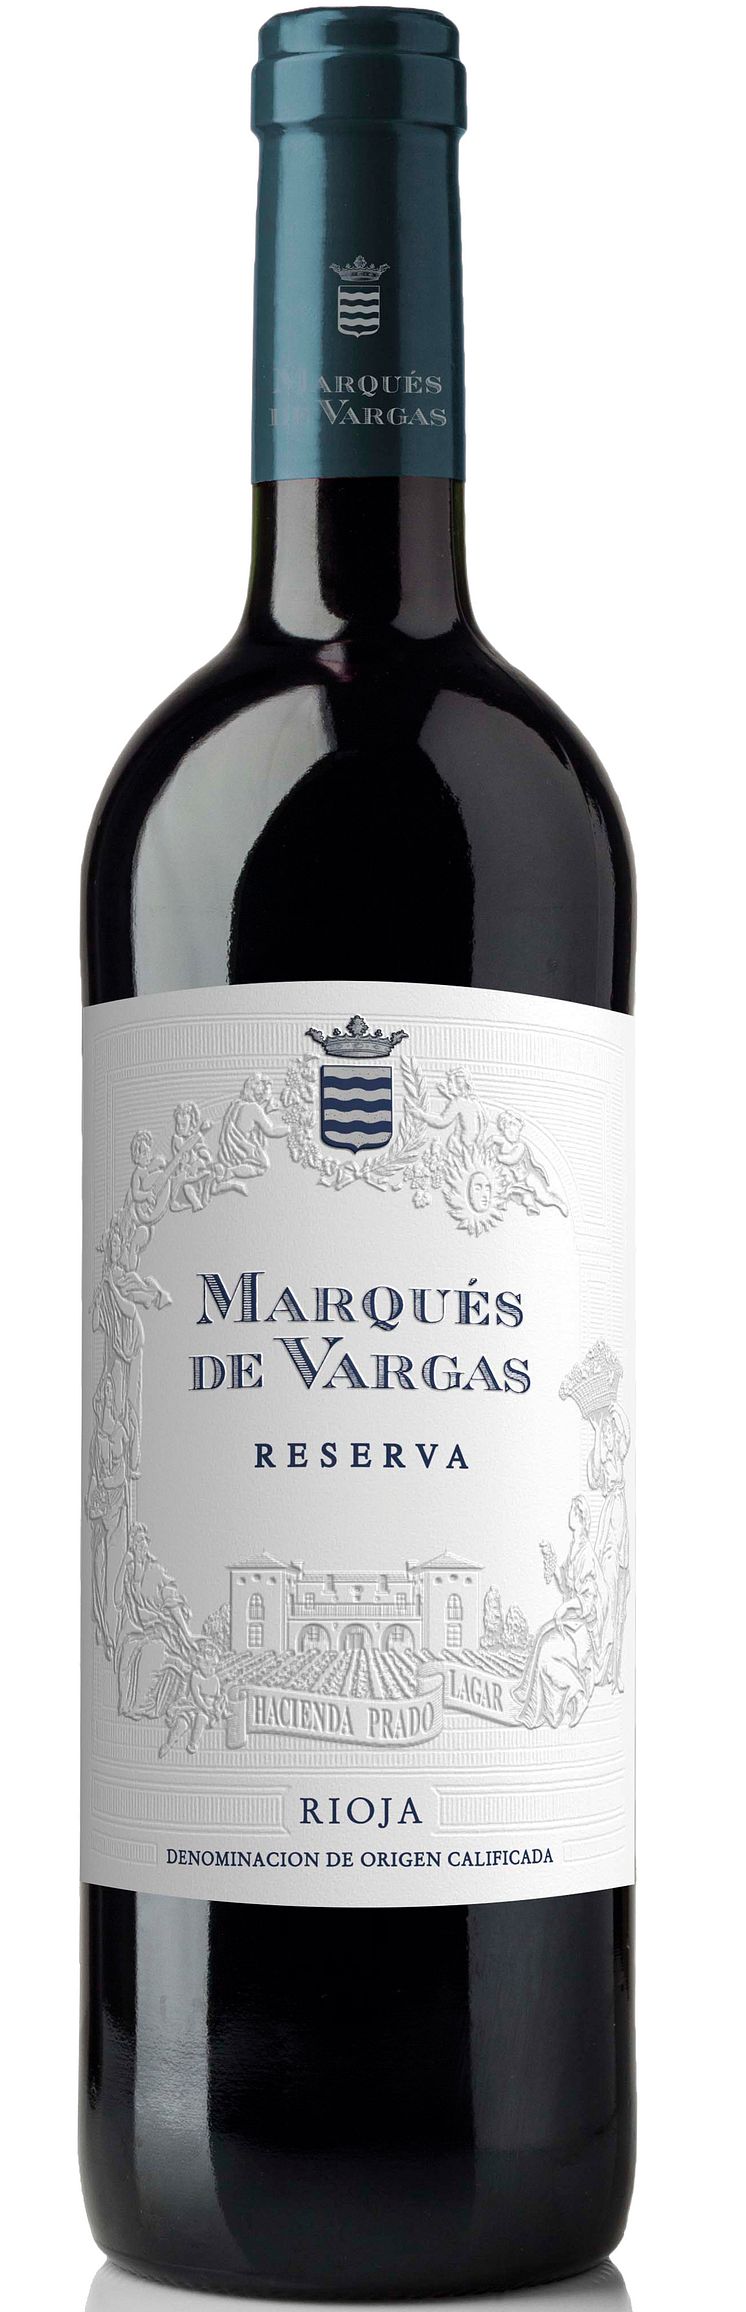 Marqués de Vargas Reserva 2012 